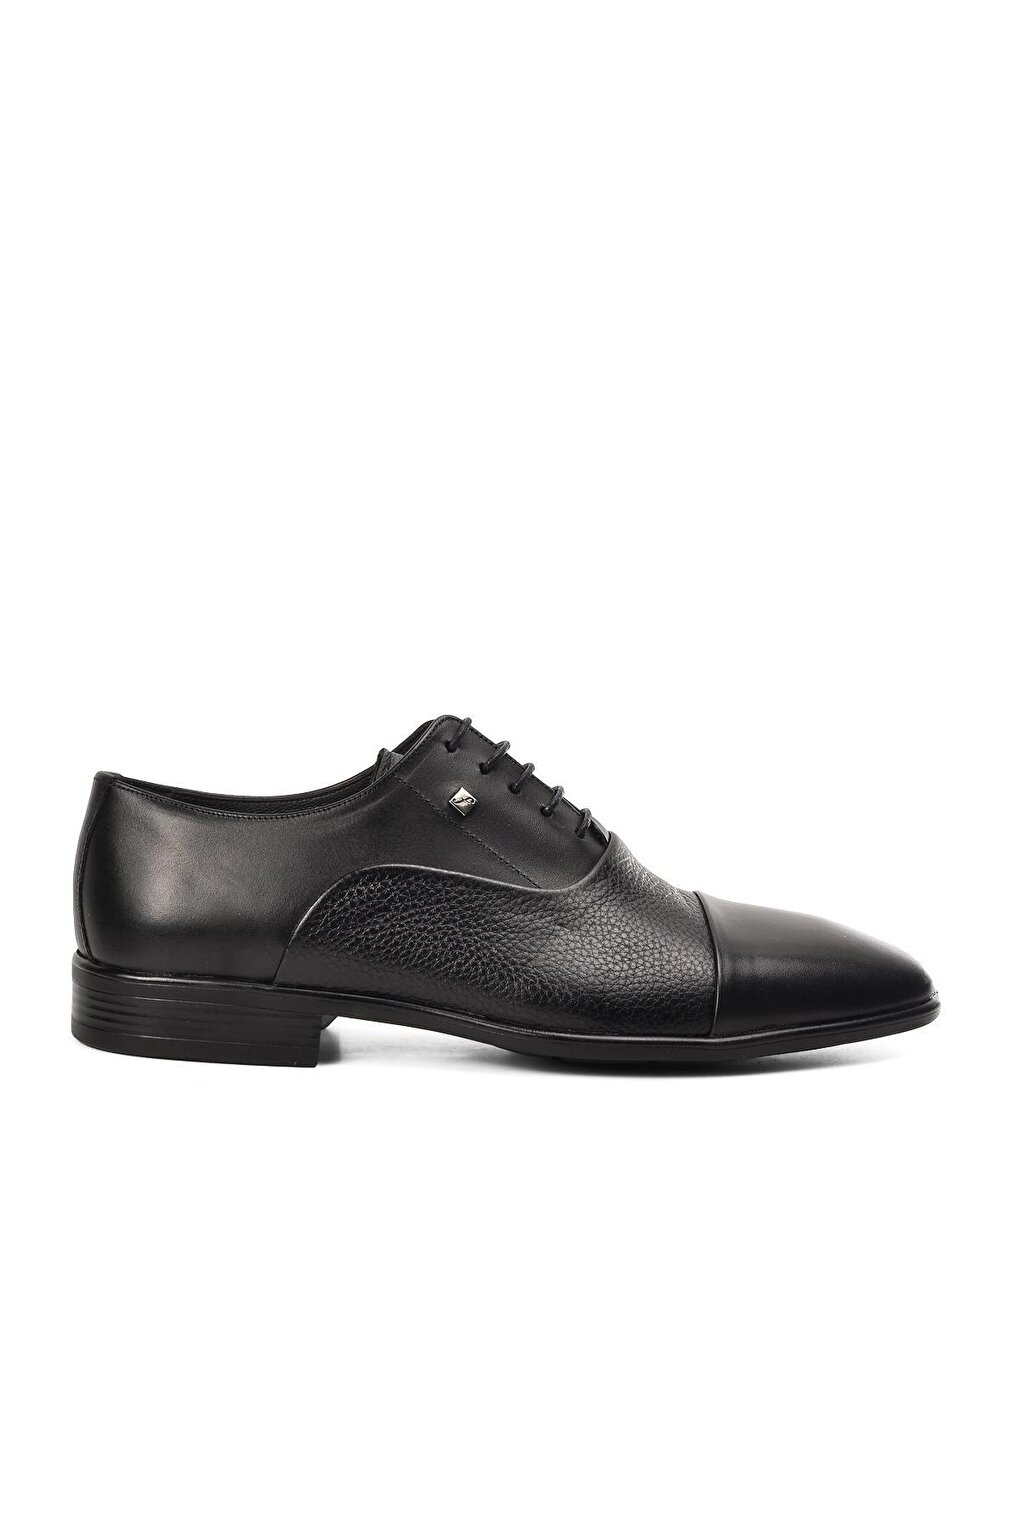 Черные мужские классические туфли из натуральной кожи на шнуровке 2805 Fosco мужские классические туфли из натуральной кожи оксфорды свадебные туфли круглый носок на шнуровке для бизнеса работы черные белые